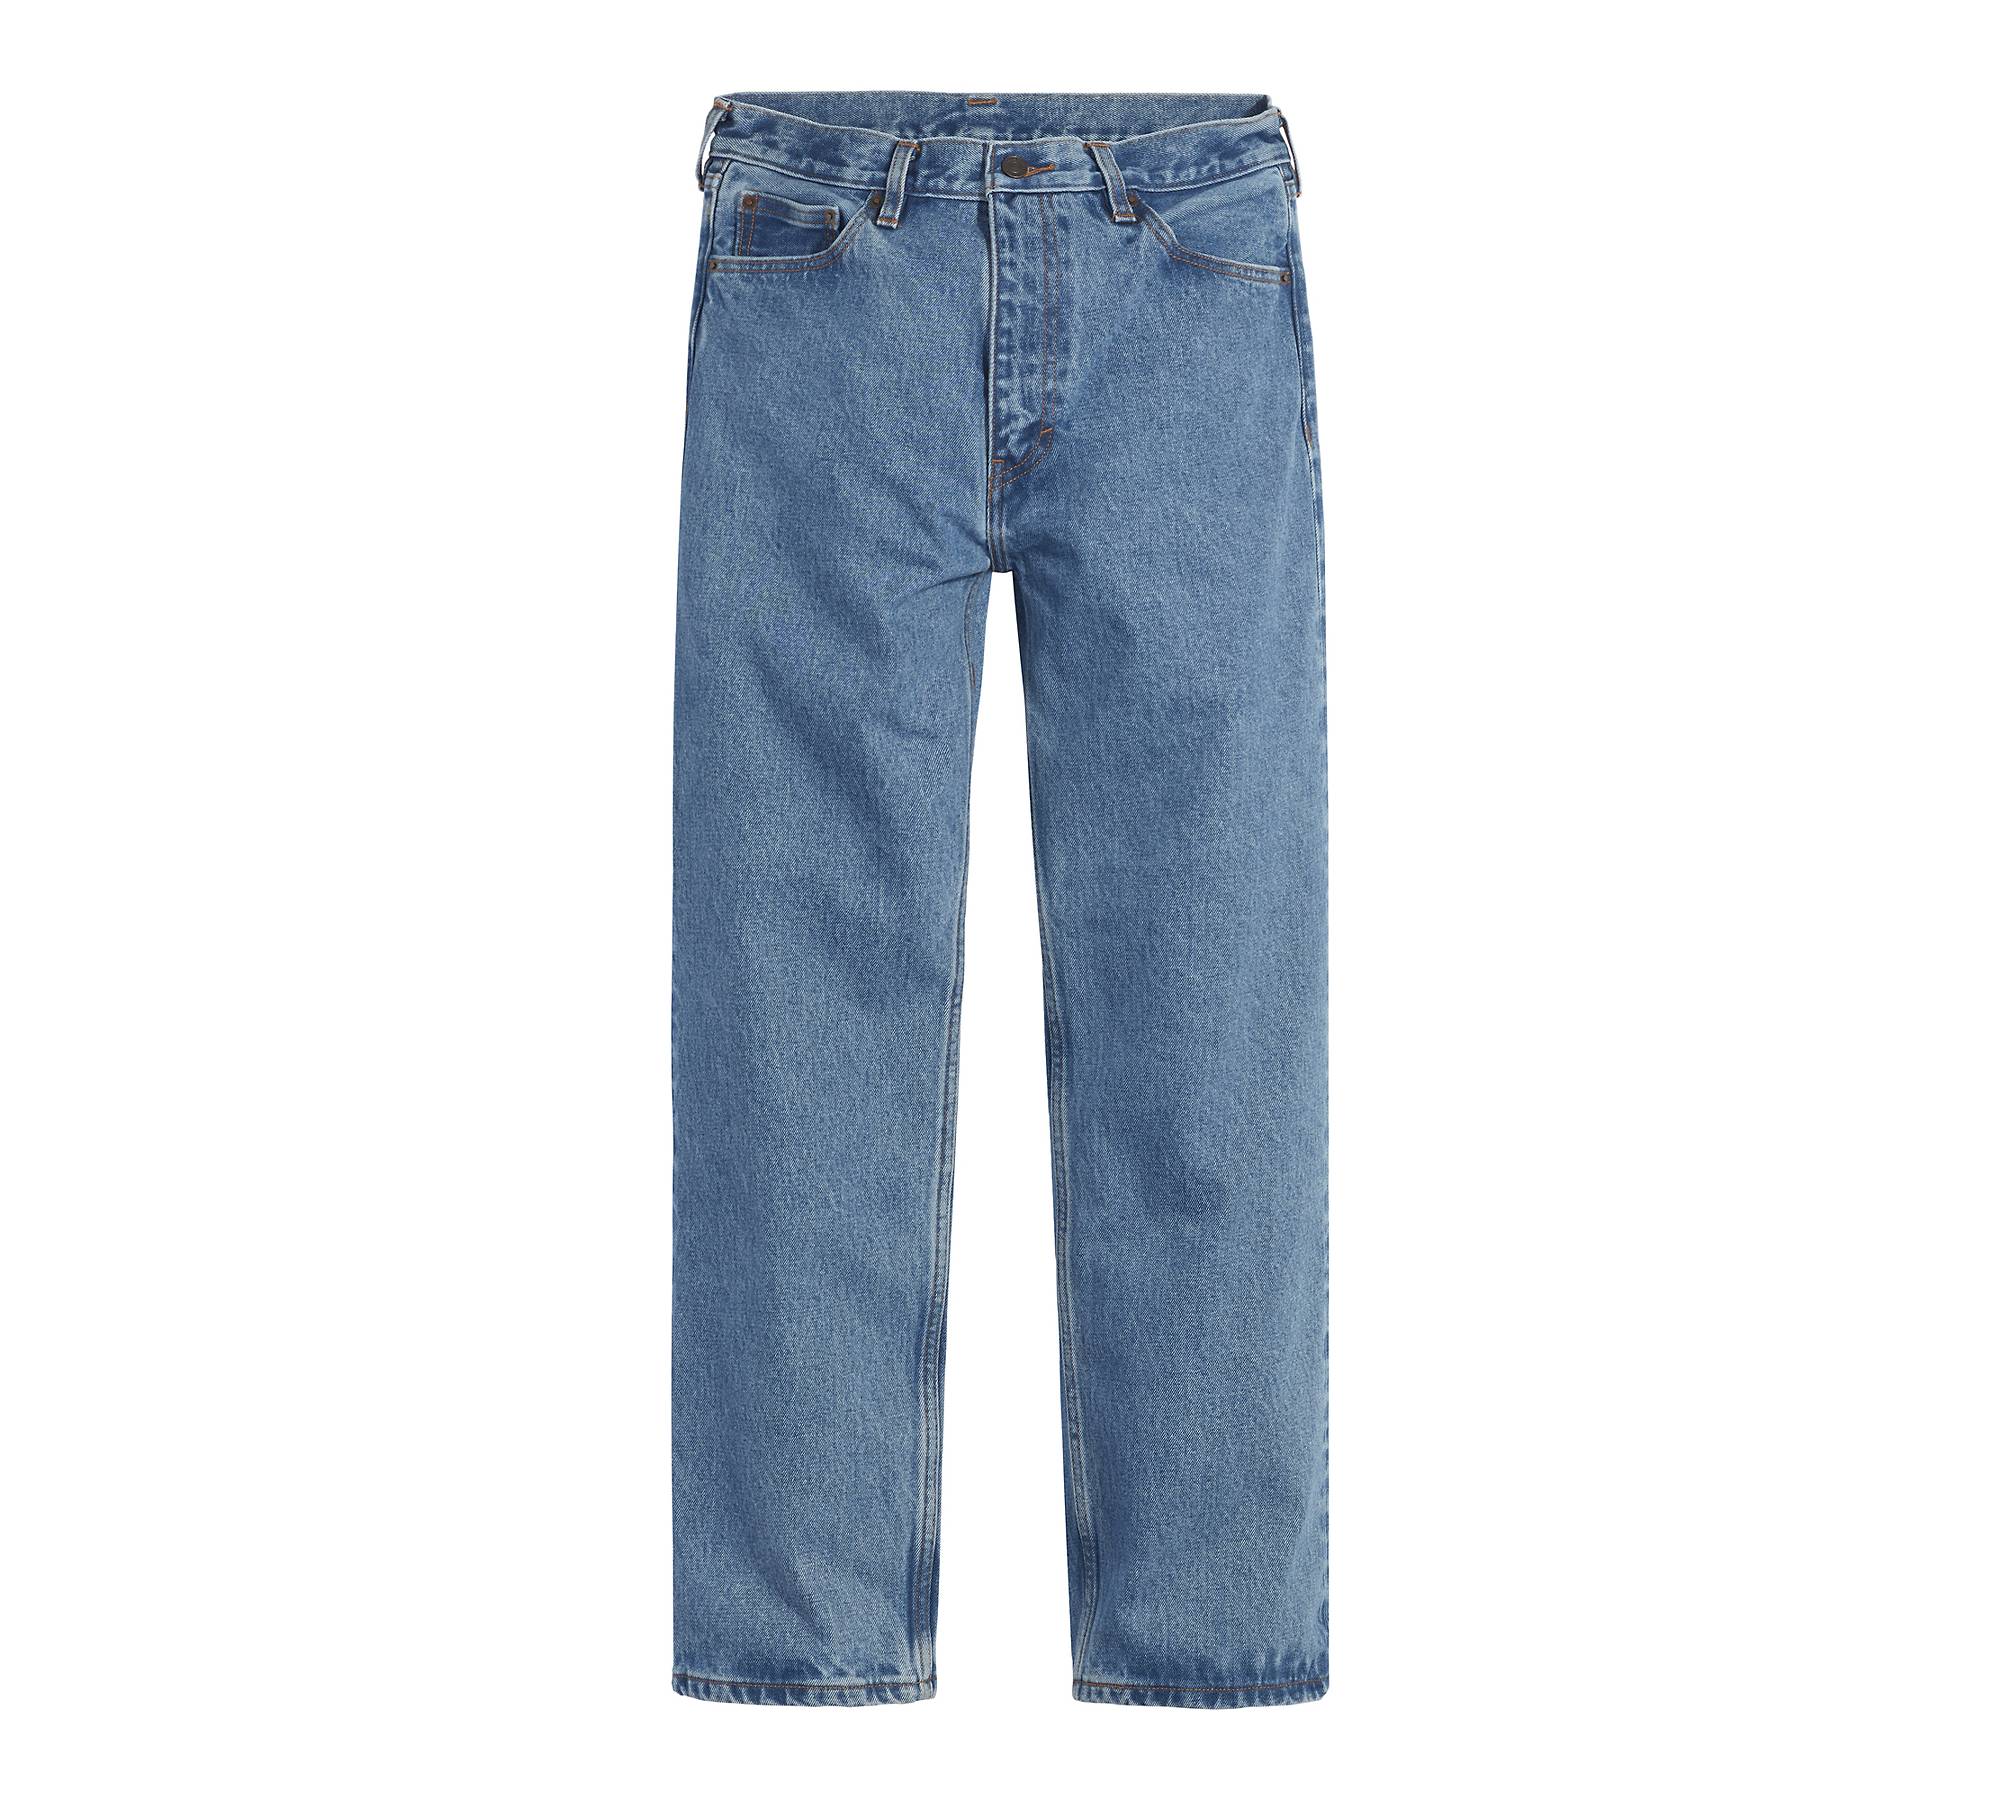 Affect teens Standard Levi's® skate Baggy 5 Pocket Men's Jeans - Dark Wash | Levi's® CA